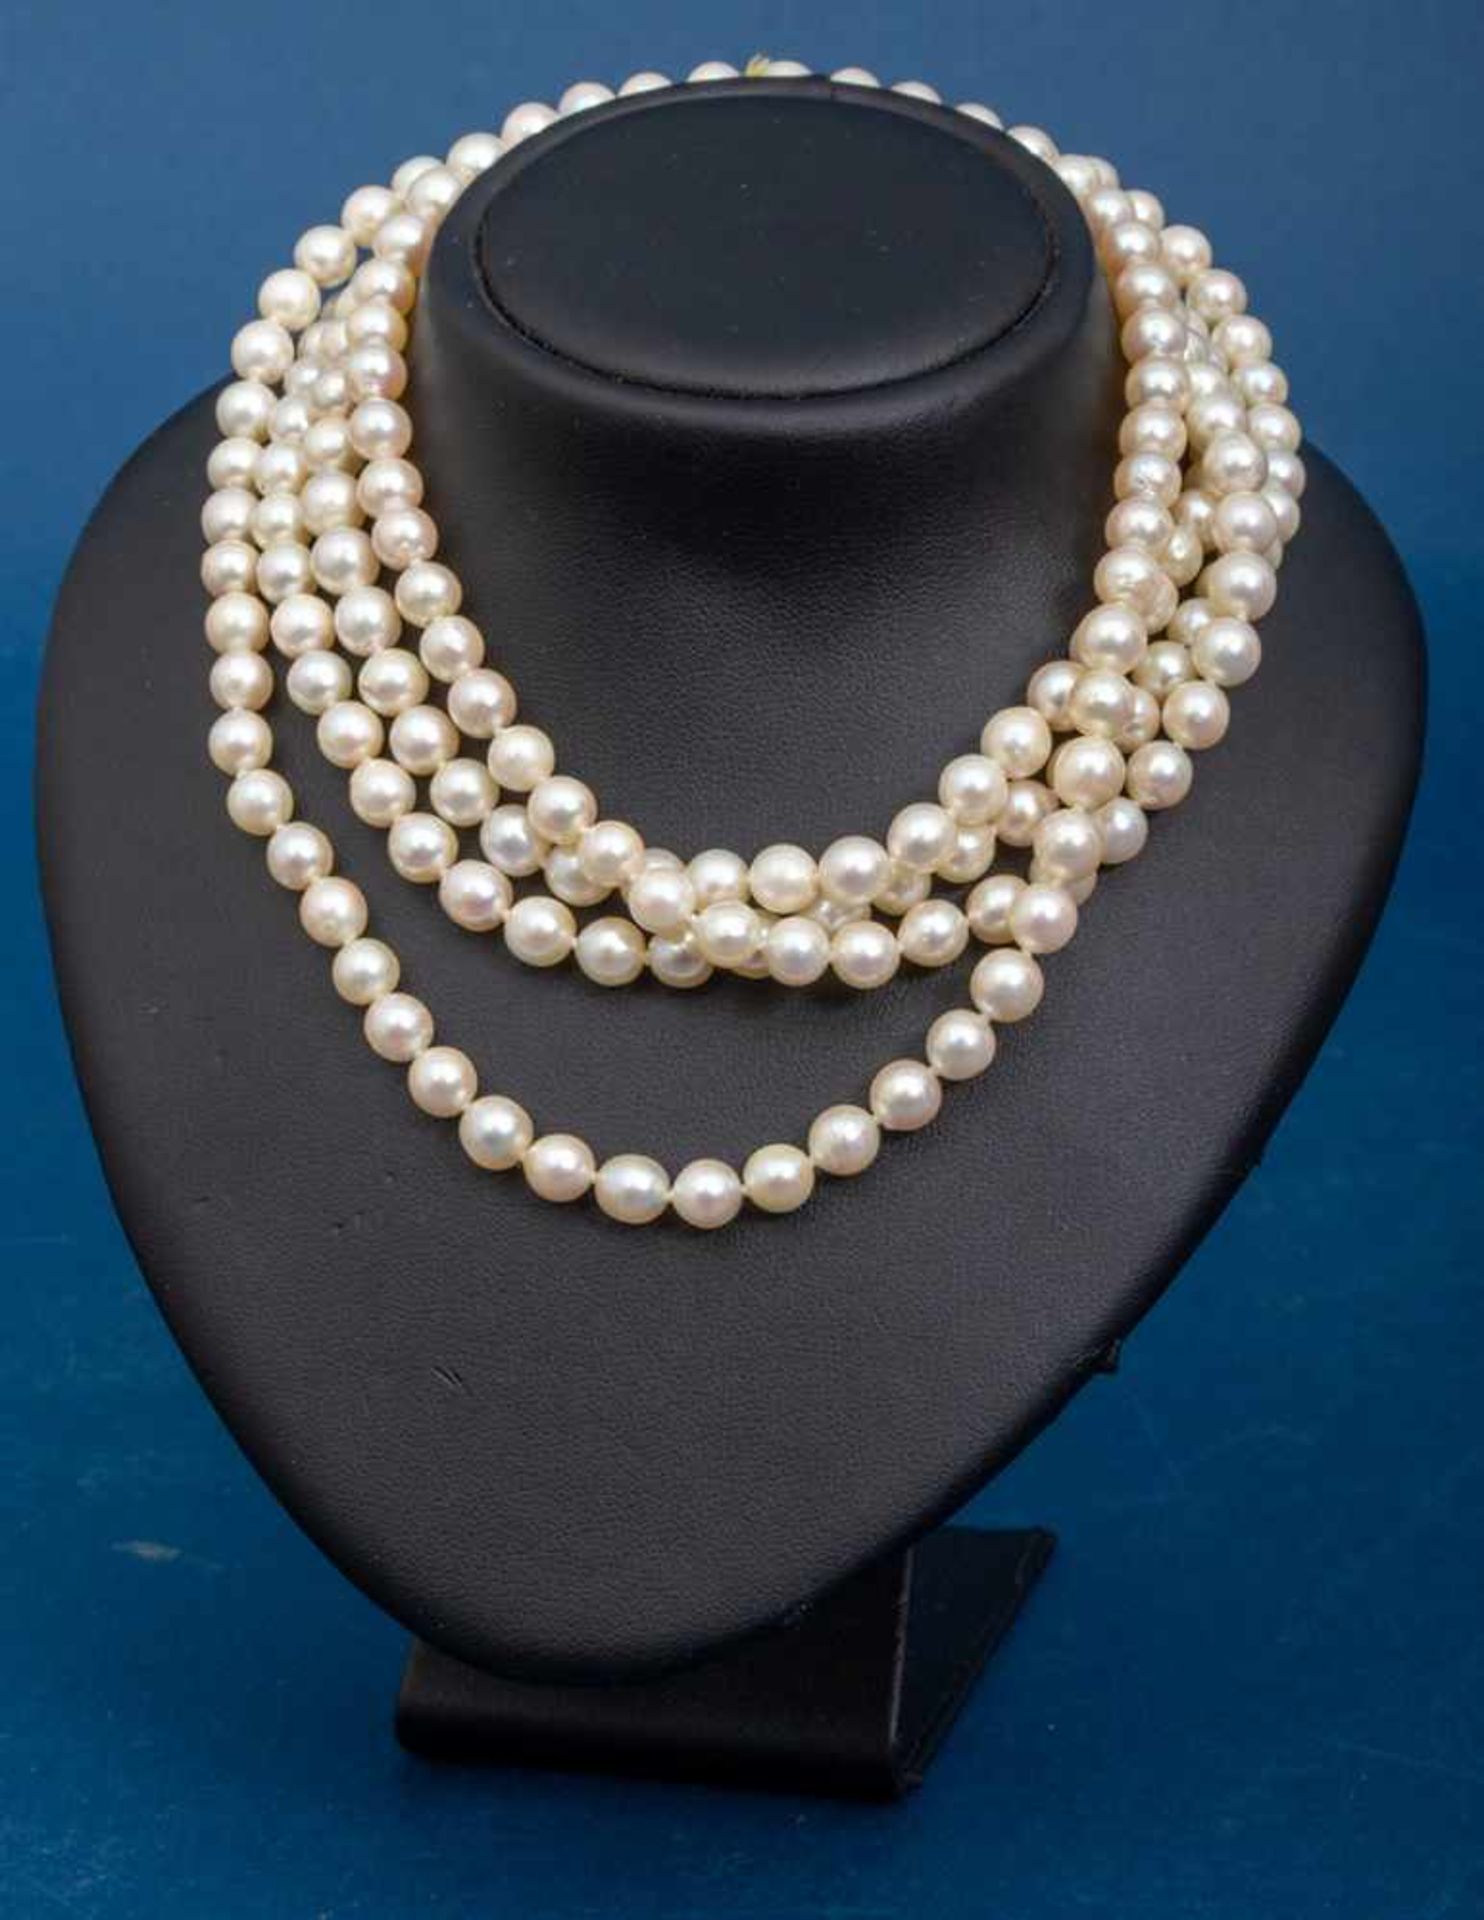 Lange Perlenkette, ca. 125 cm, Durchmesser der einzeln geknoteten Perlen ca. 6 mm.- - -20.00 %